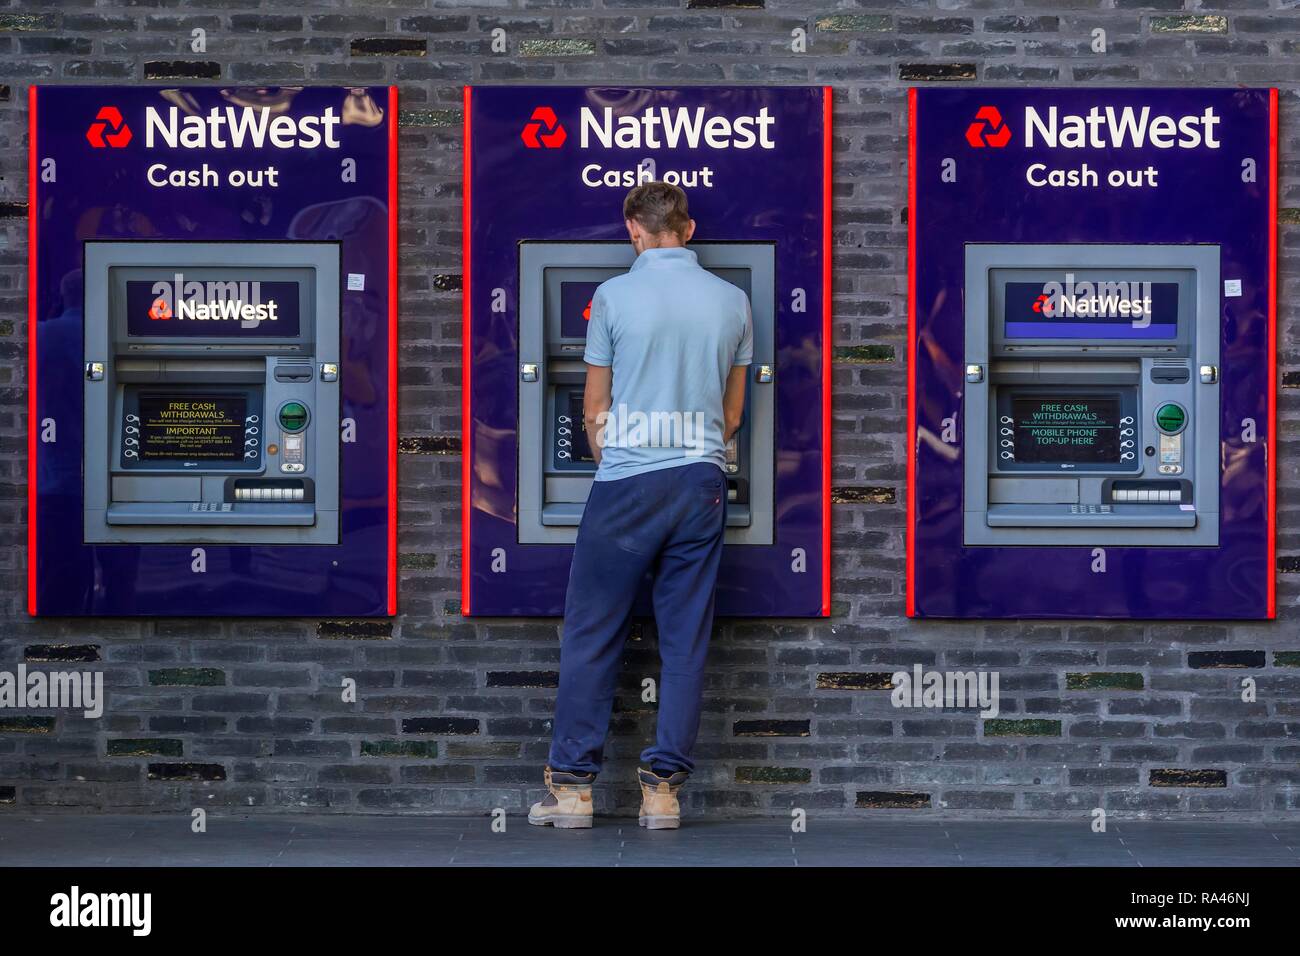 L'homme au distributeur de billets de banque NatWest, Londres, Grande-Bretagne Banque D'Images